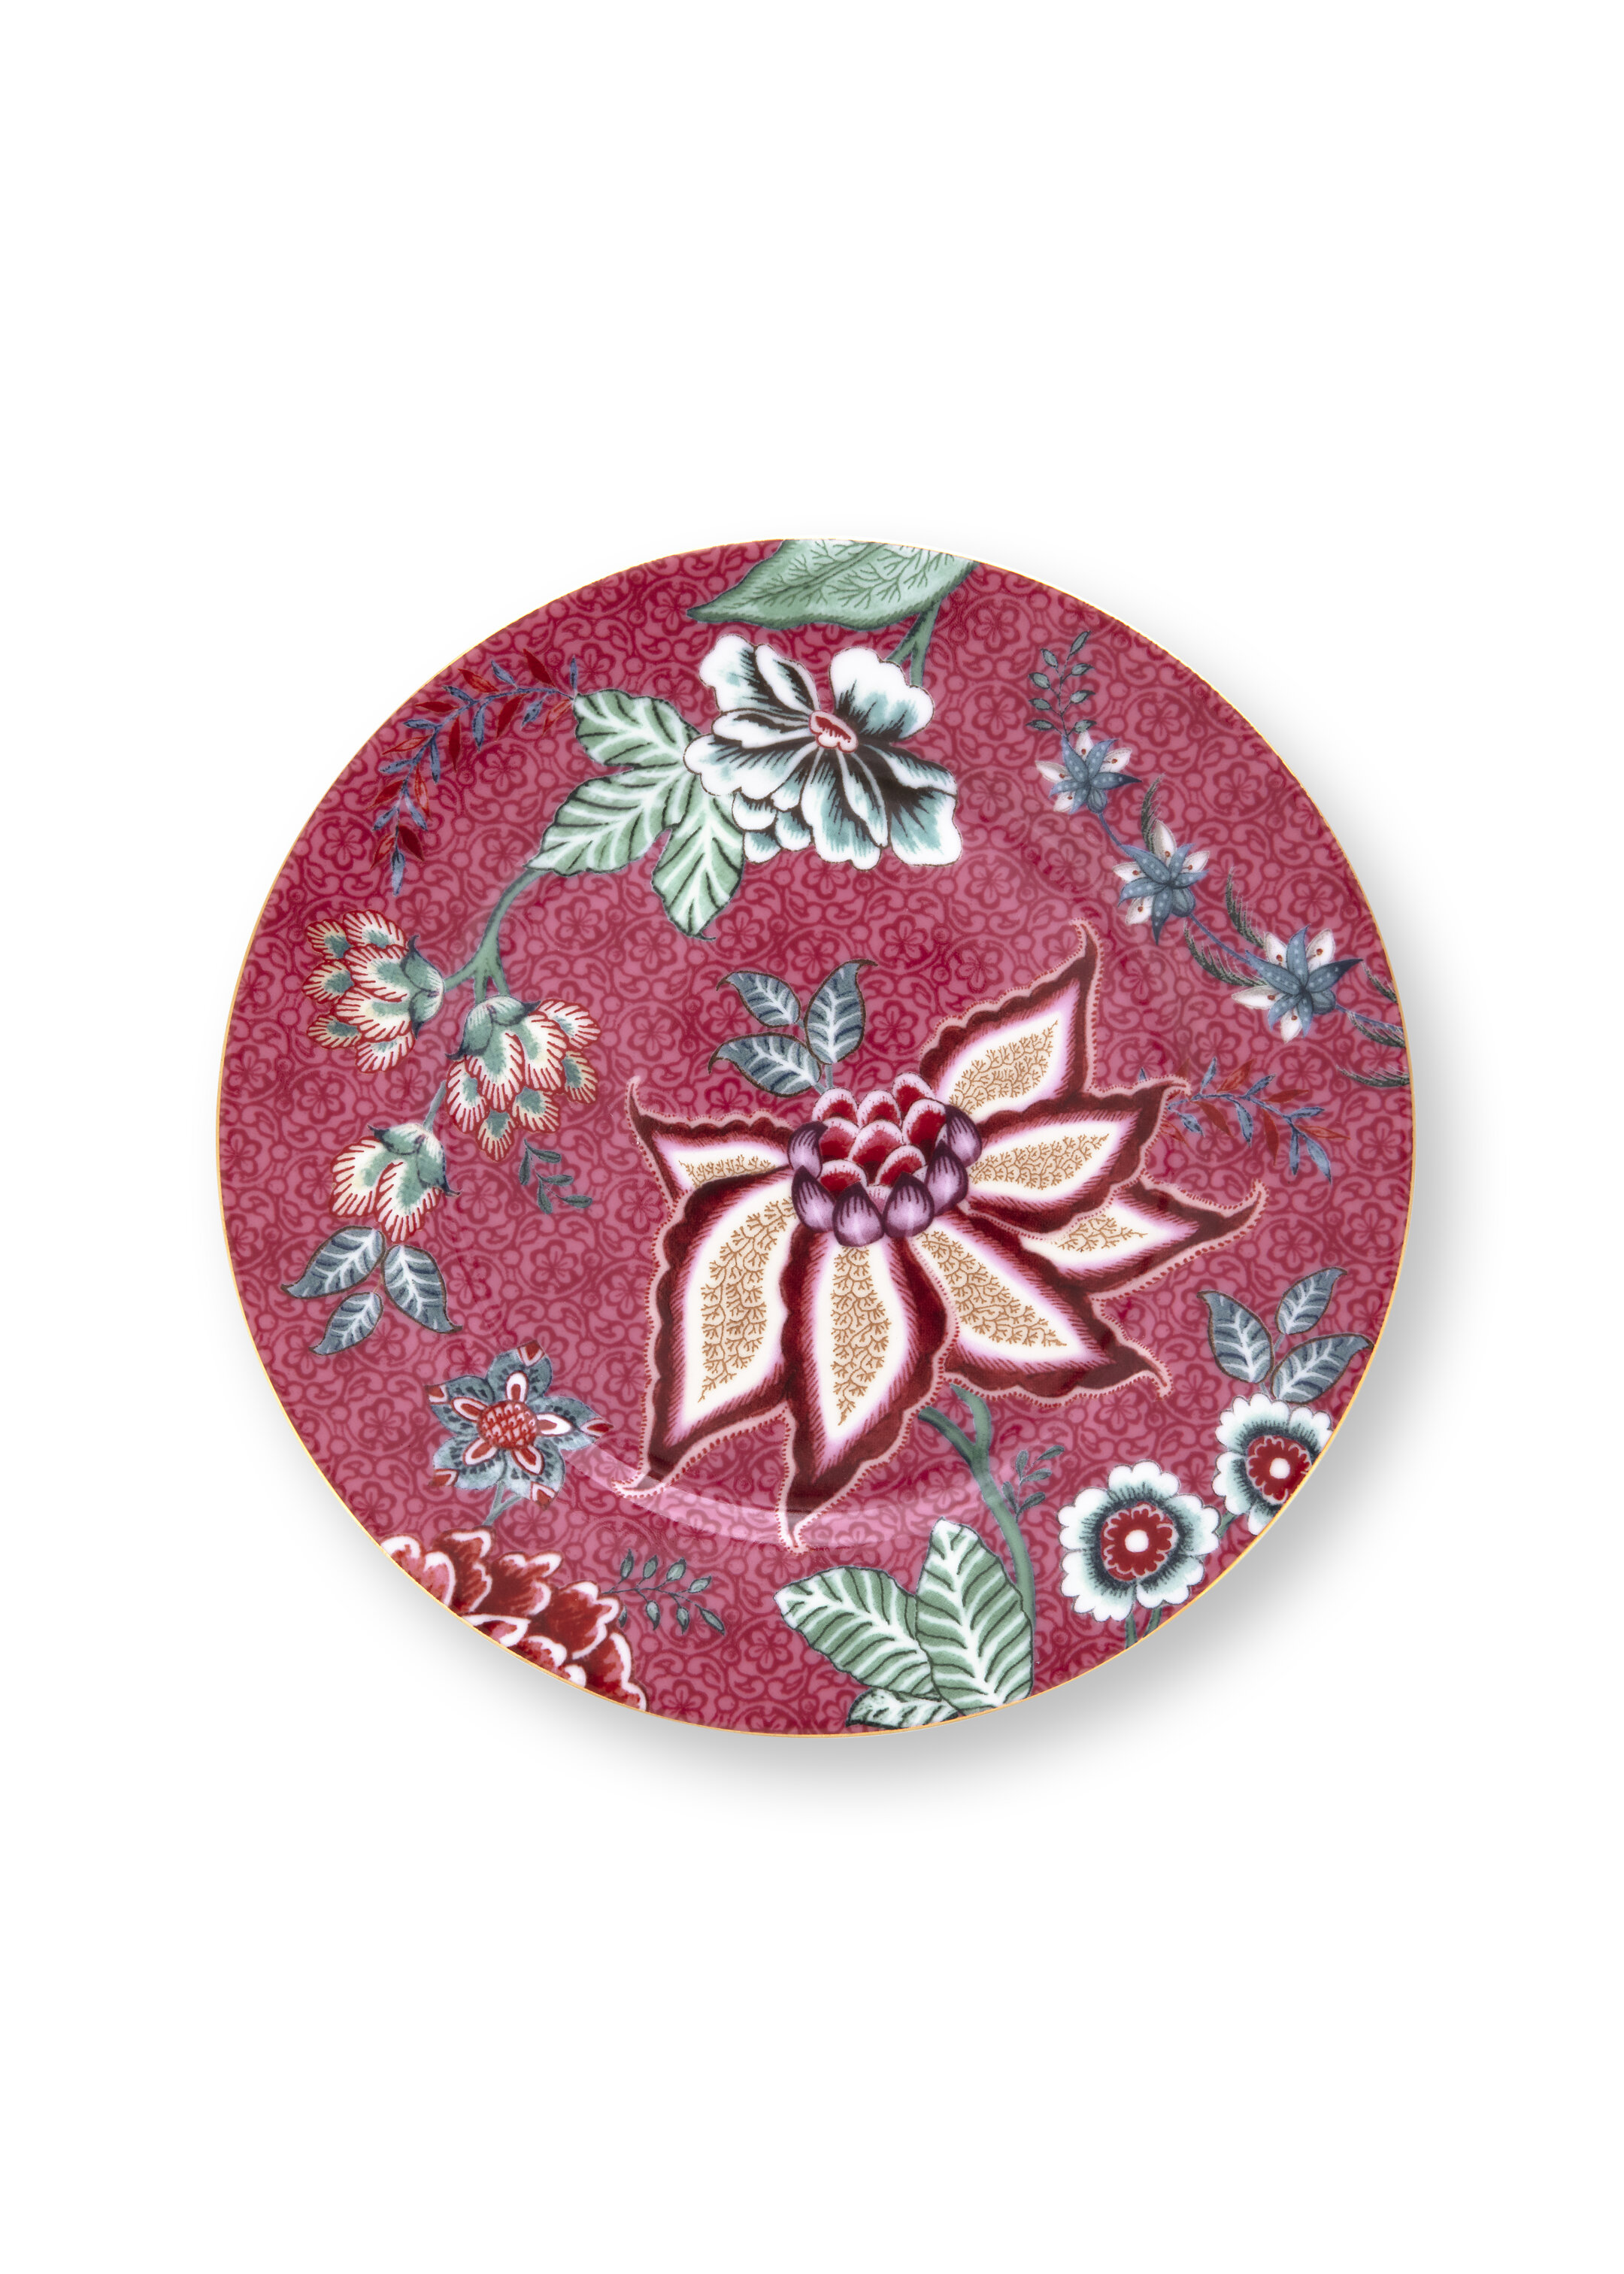 Plate Flower Festival Dark Pink 17cm Gift